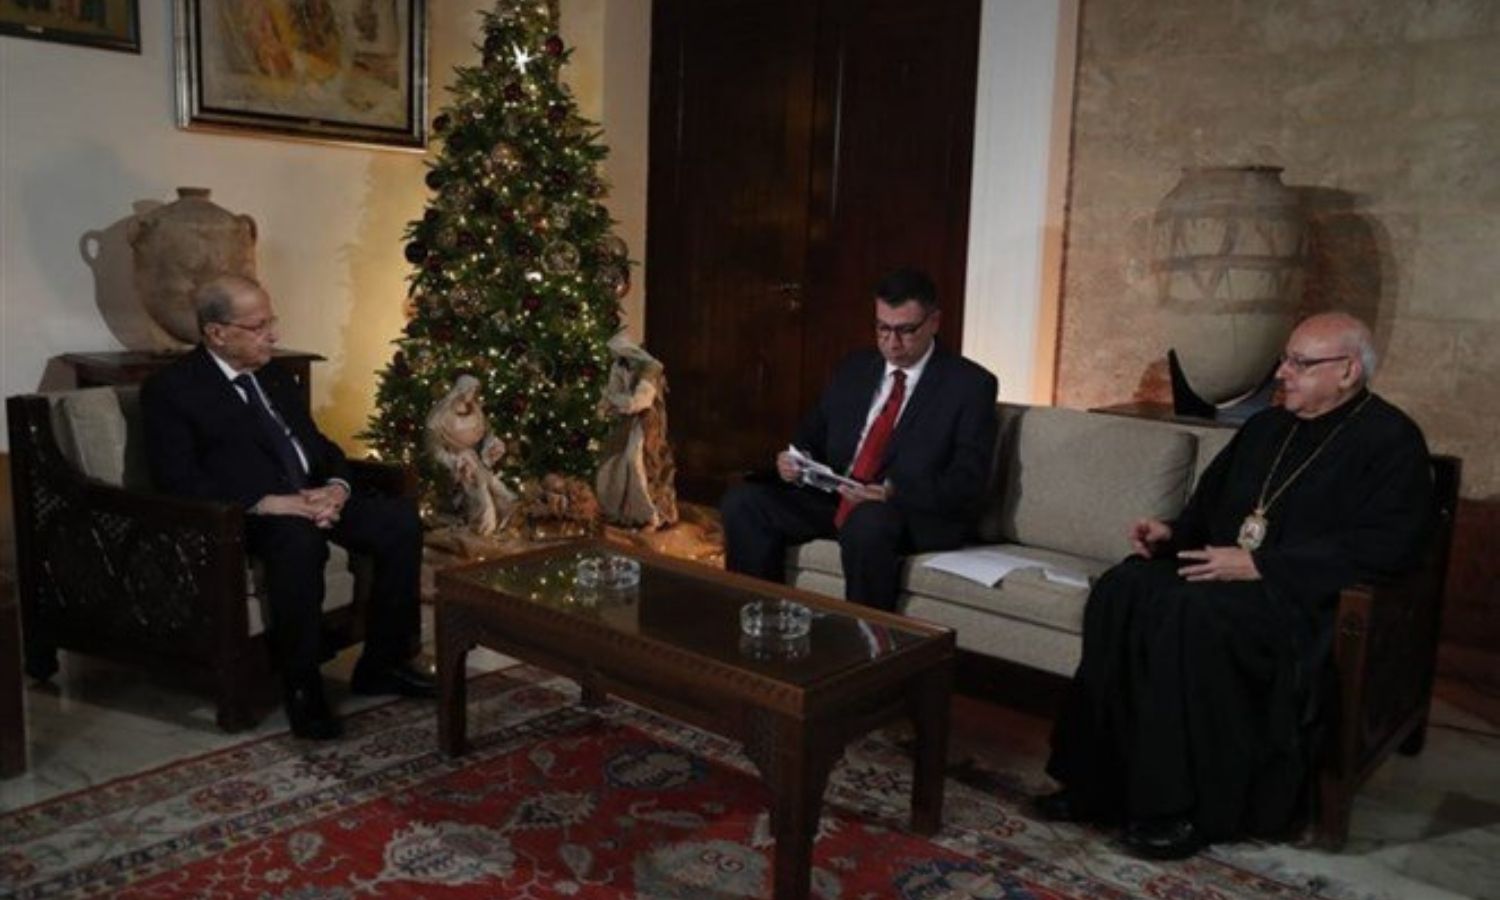 الرئيس اللبناني، ميشال عون، في مقابلة مع قناة "أو تي في" عشية عيد الميلاد، 24 كانون الأول 2021 (التيار الوطني الحر)